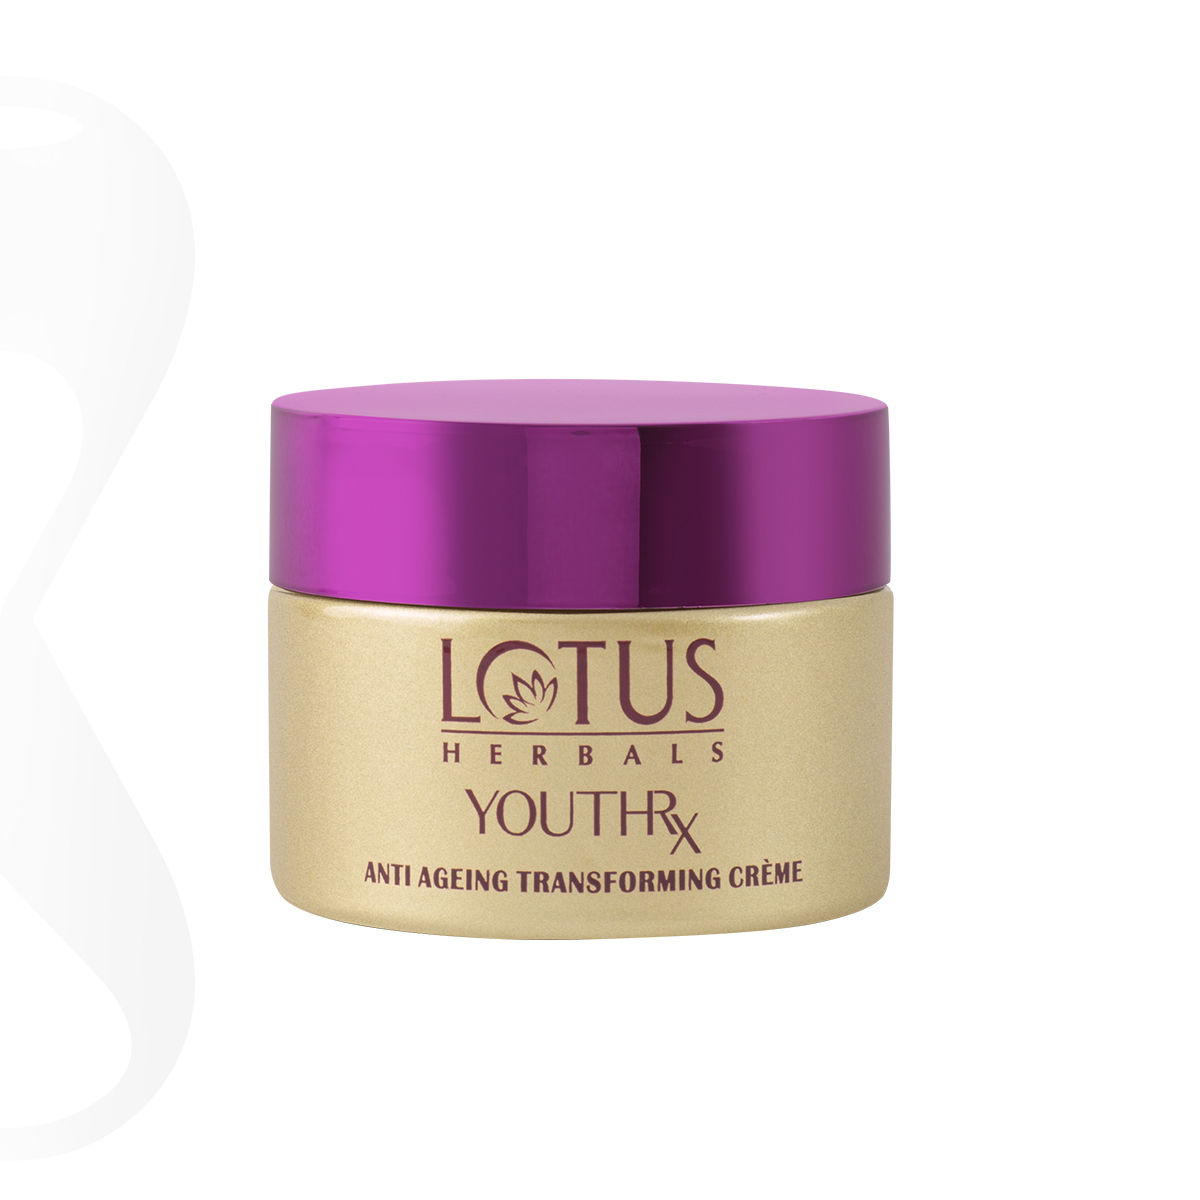 Lotus Herbals YouthRx Anti-Ageing Transforming Creme SPF 25 Pa +++